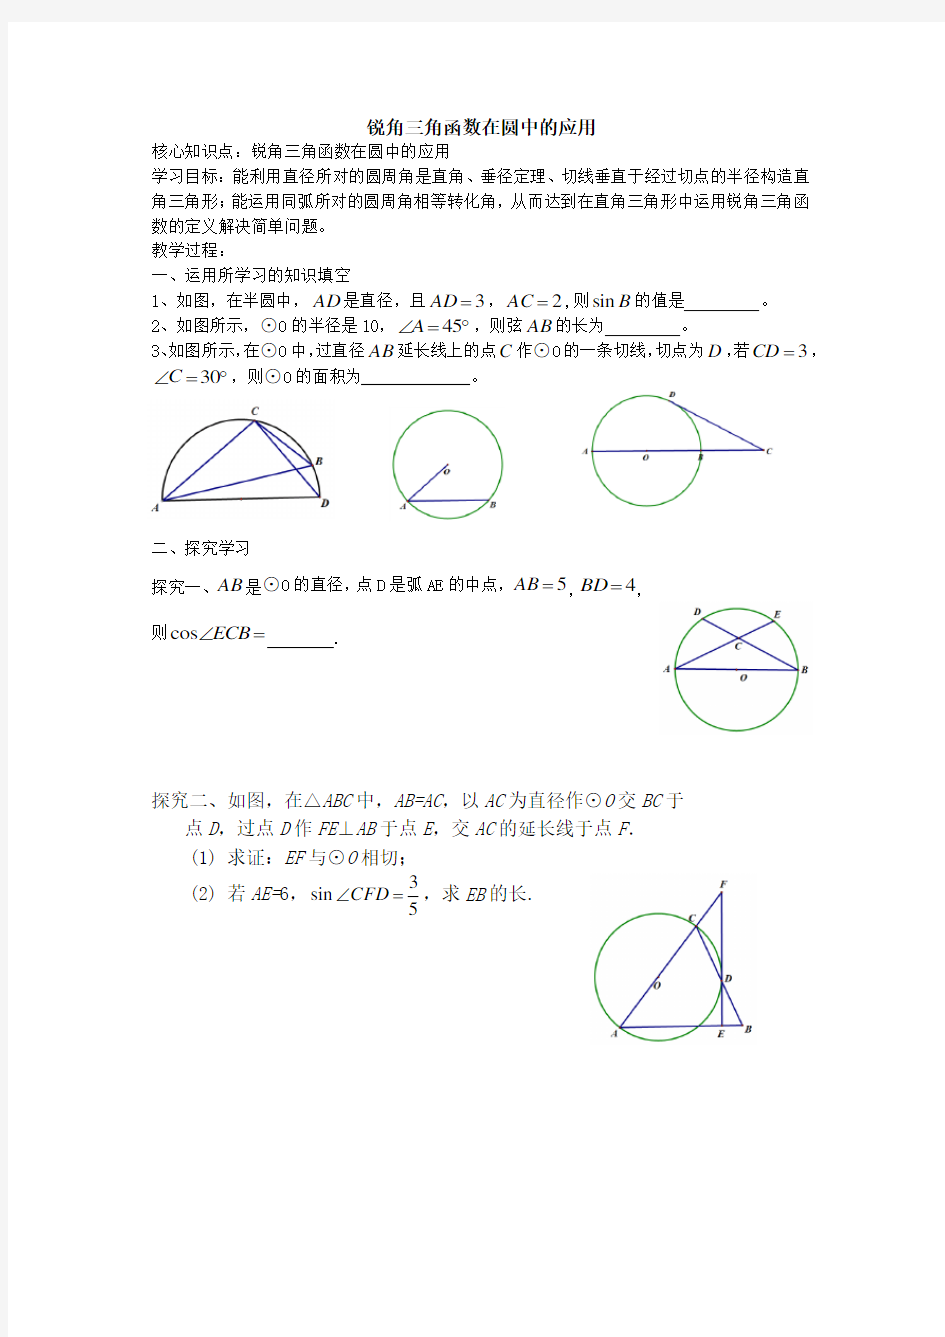 锐角三角函数在圆中的应用